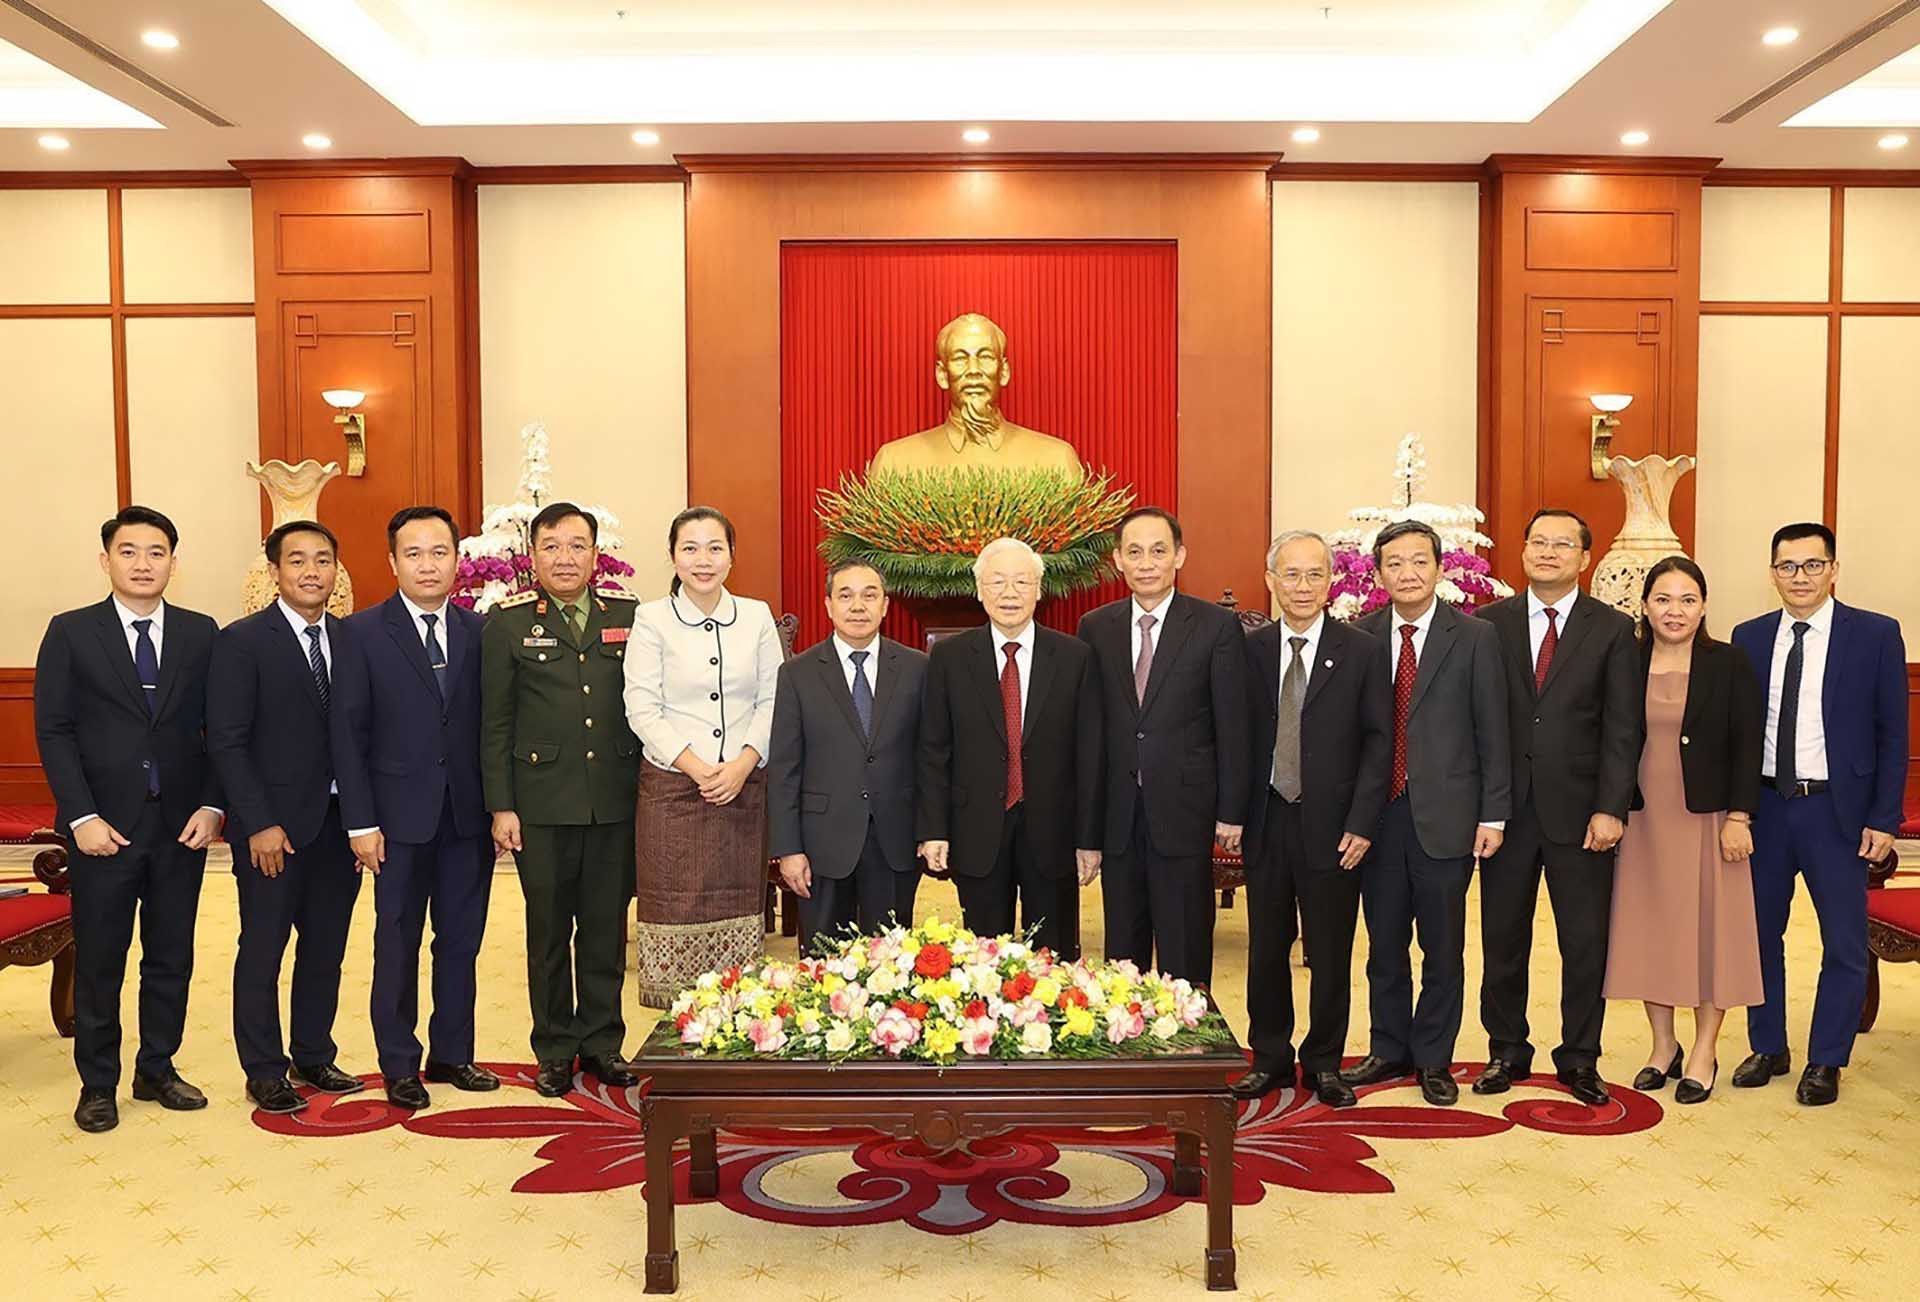 Tổng Bí thư Nguyễn Phú Trọng và Đại sứ Lào Sengphet Houngboungnuang cùng các đại biểu chụp ảnh chung. (Nguồn: TTXVN)